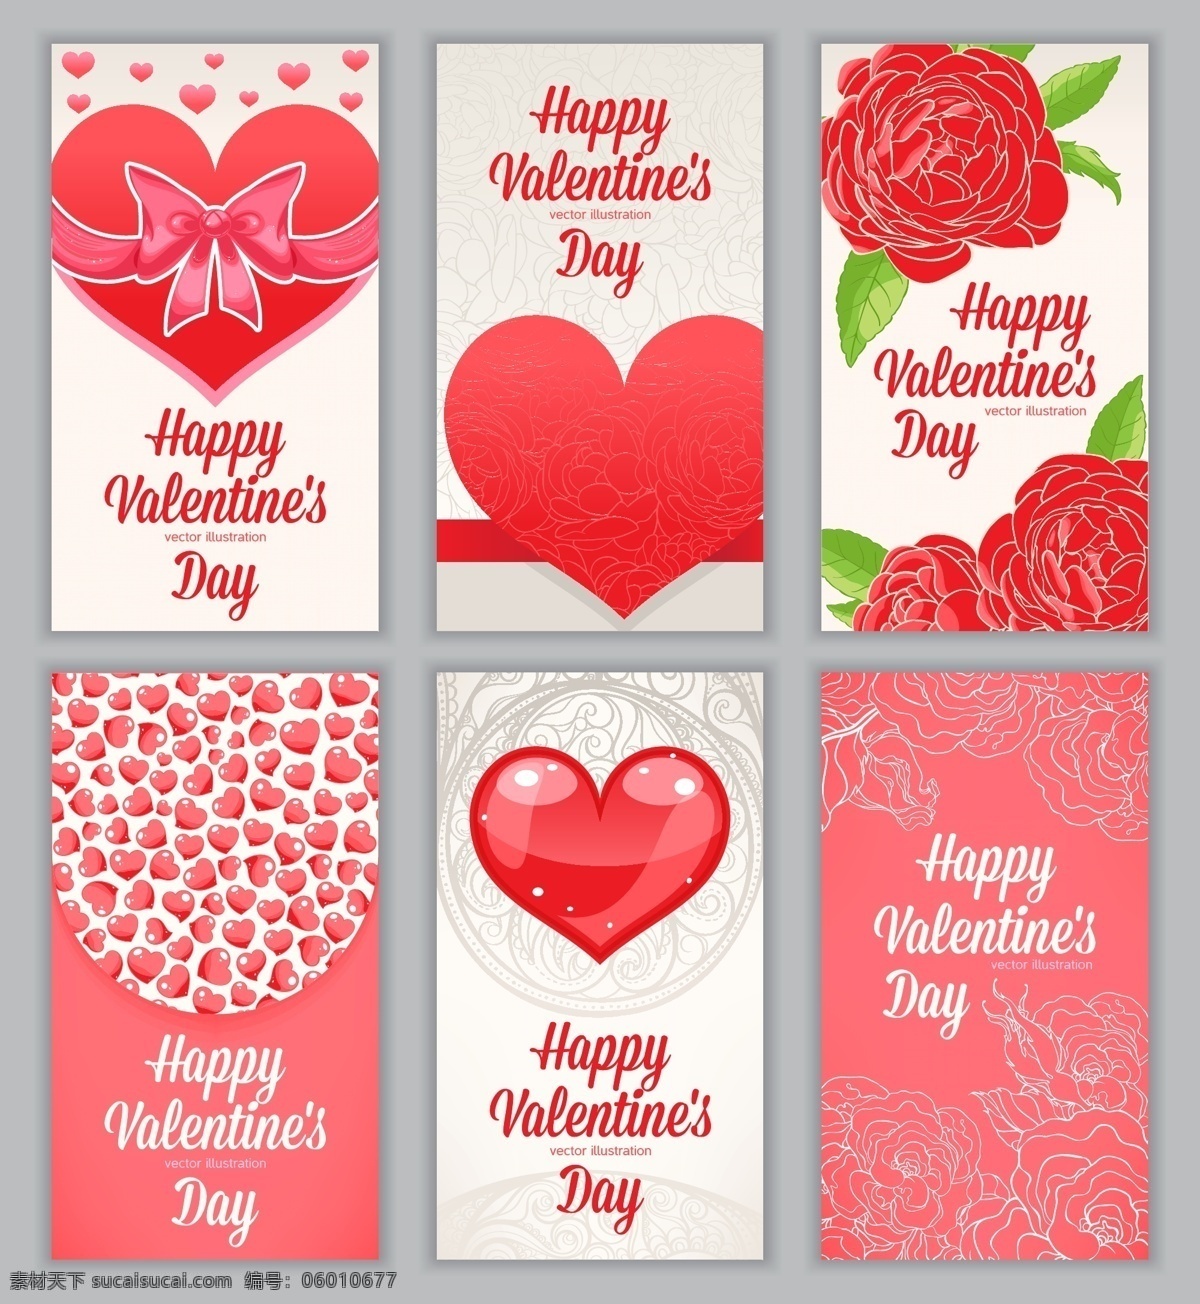 红色 玫瑰花 爱心 模板下载 红爱 心形 214情人节 爱情 浪漫婚礼婚庆 节日素材 绿叶 情人节 矢量素材